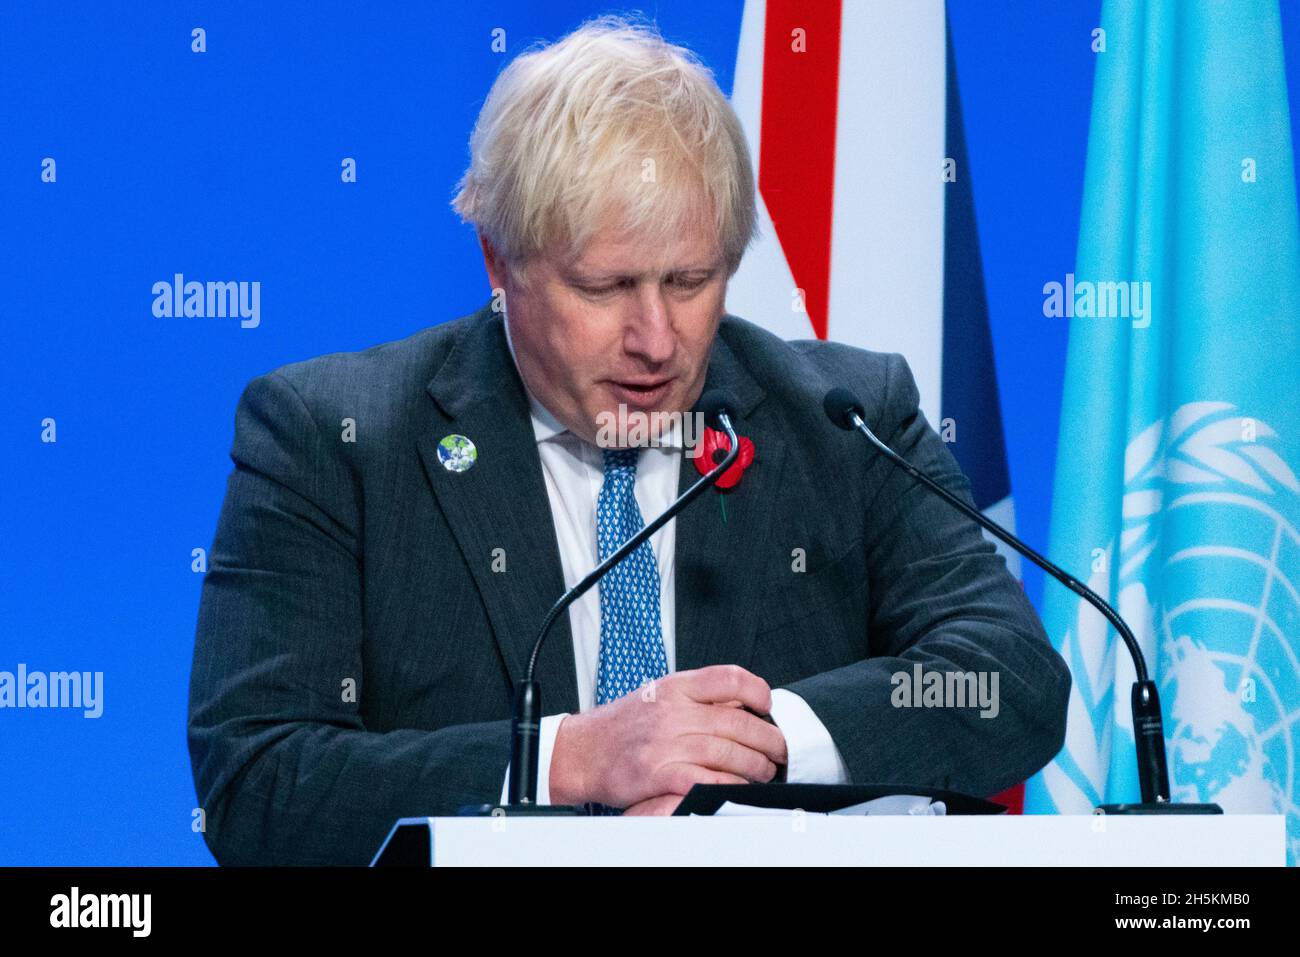 Glasgow, Scozia, Regno Unito. 10 novembre 2021. Il giorno 11 del vertice sul clima e il primo ministro Boris Johnson parlano ai media britannici in una conferenza stampa. Iain Masterton/Alamy Live News. Foto Stock